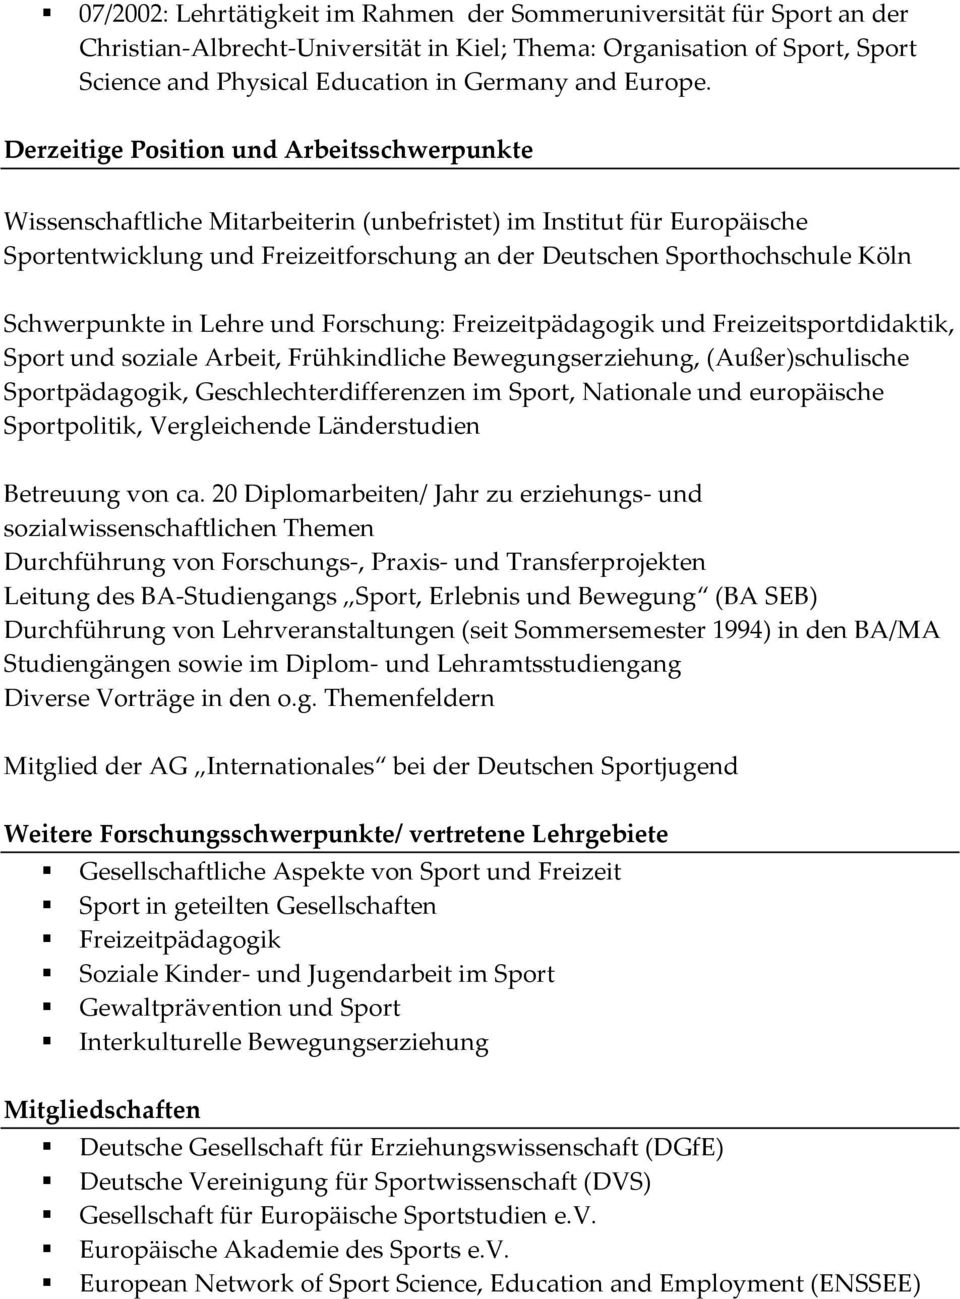 Derzeitige Position und Arbeitsschwerpunkte Wissenschaftliche Mitarbeiterin (unbefristet) im Institut für Europäische Sportentwicklung und Freizeitforschung an der Deutschen Sporthochschule Köln